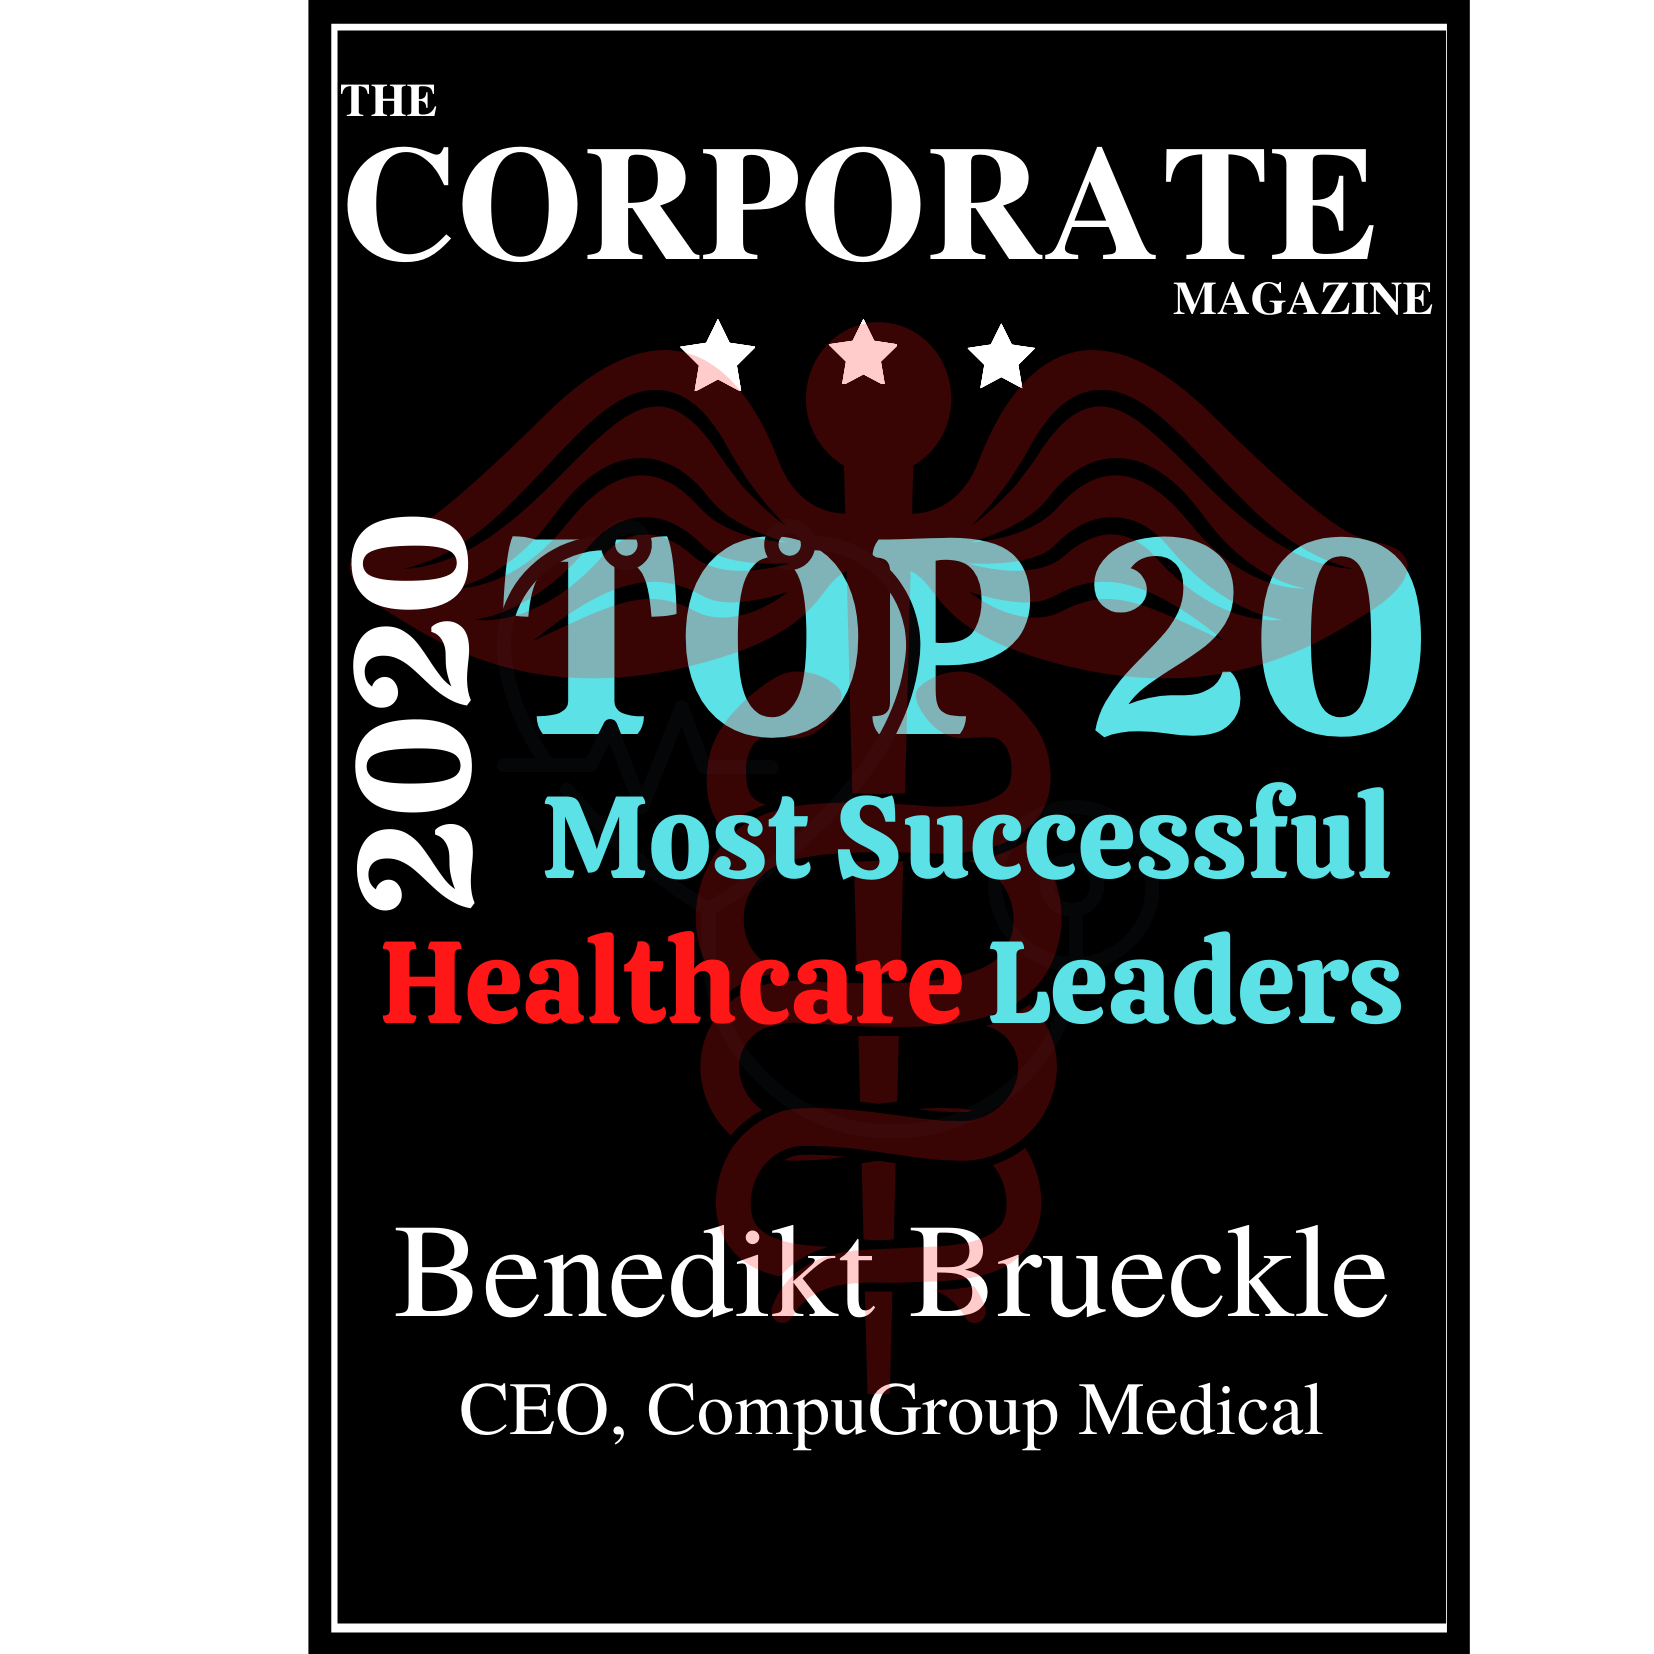 Benedikt-Brueckle-Healthcare-leader-Magazine